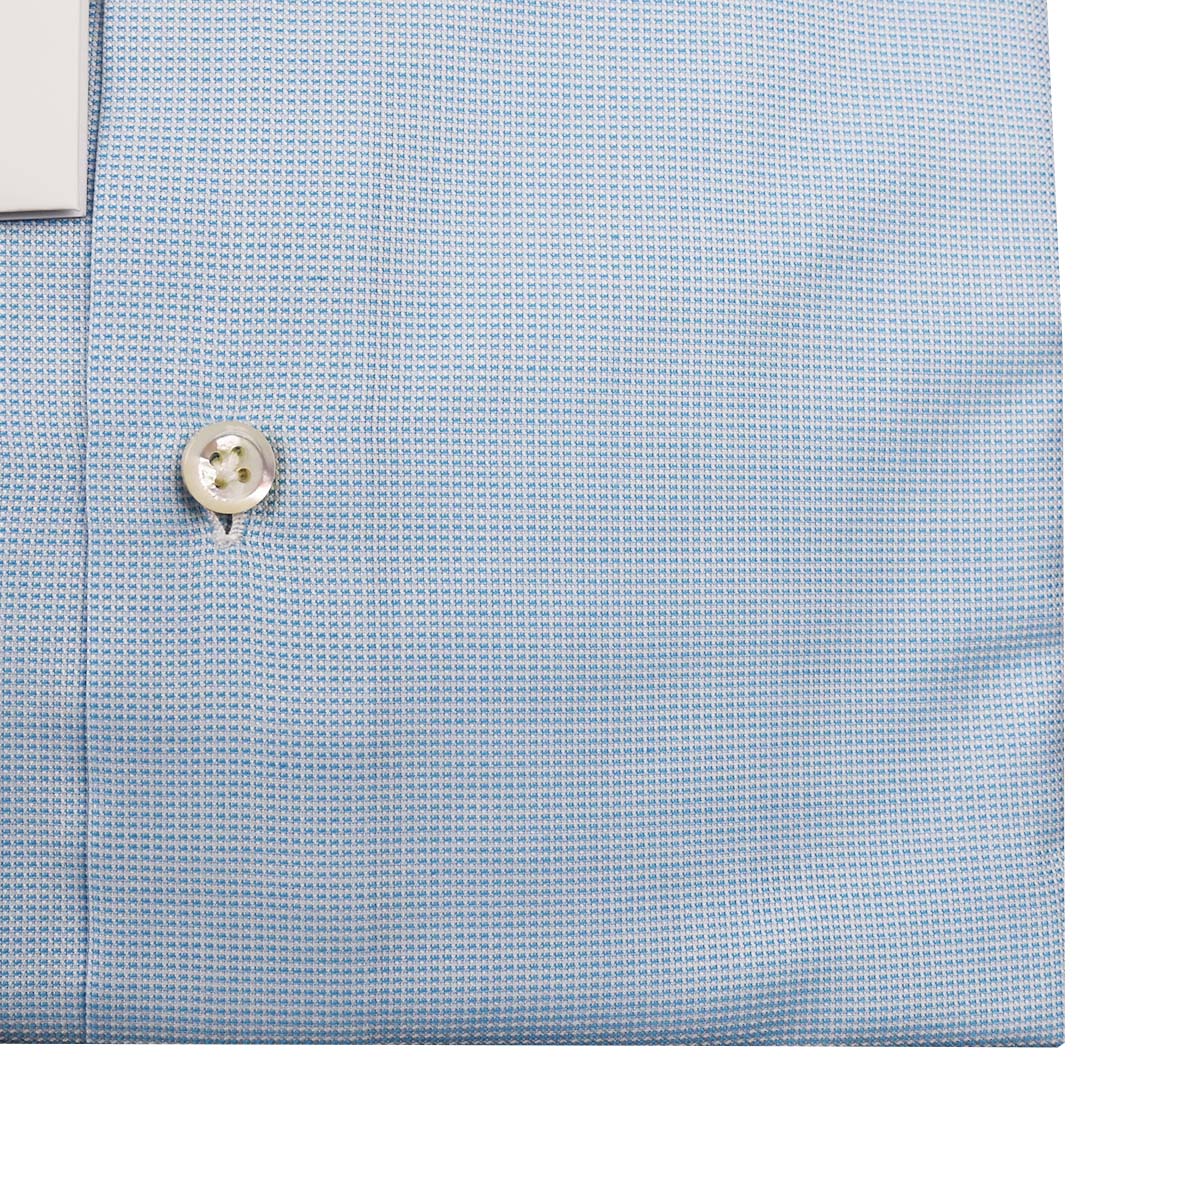 Cesare attolini bílá světle modrá bavlněná košile